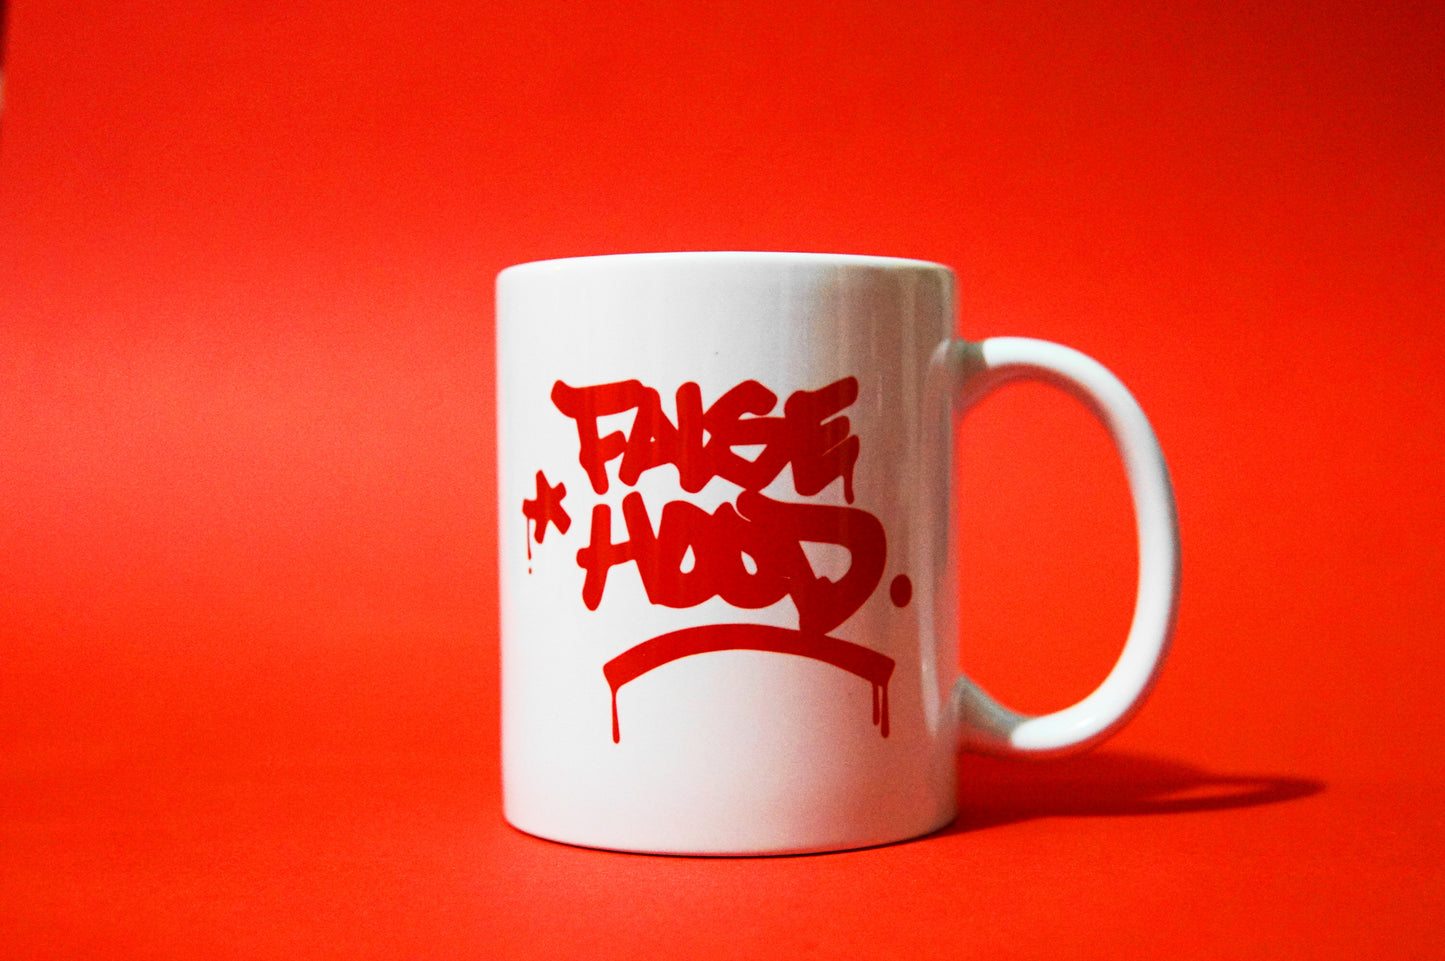 The Big TAG. Mug